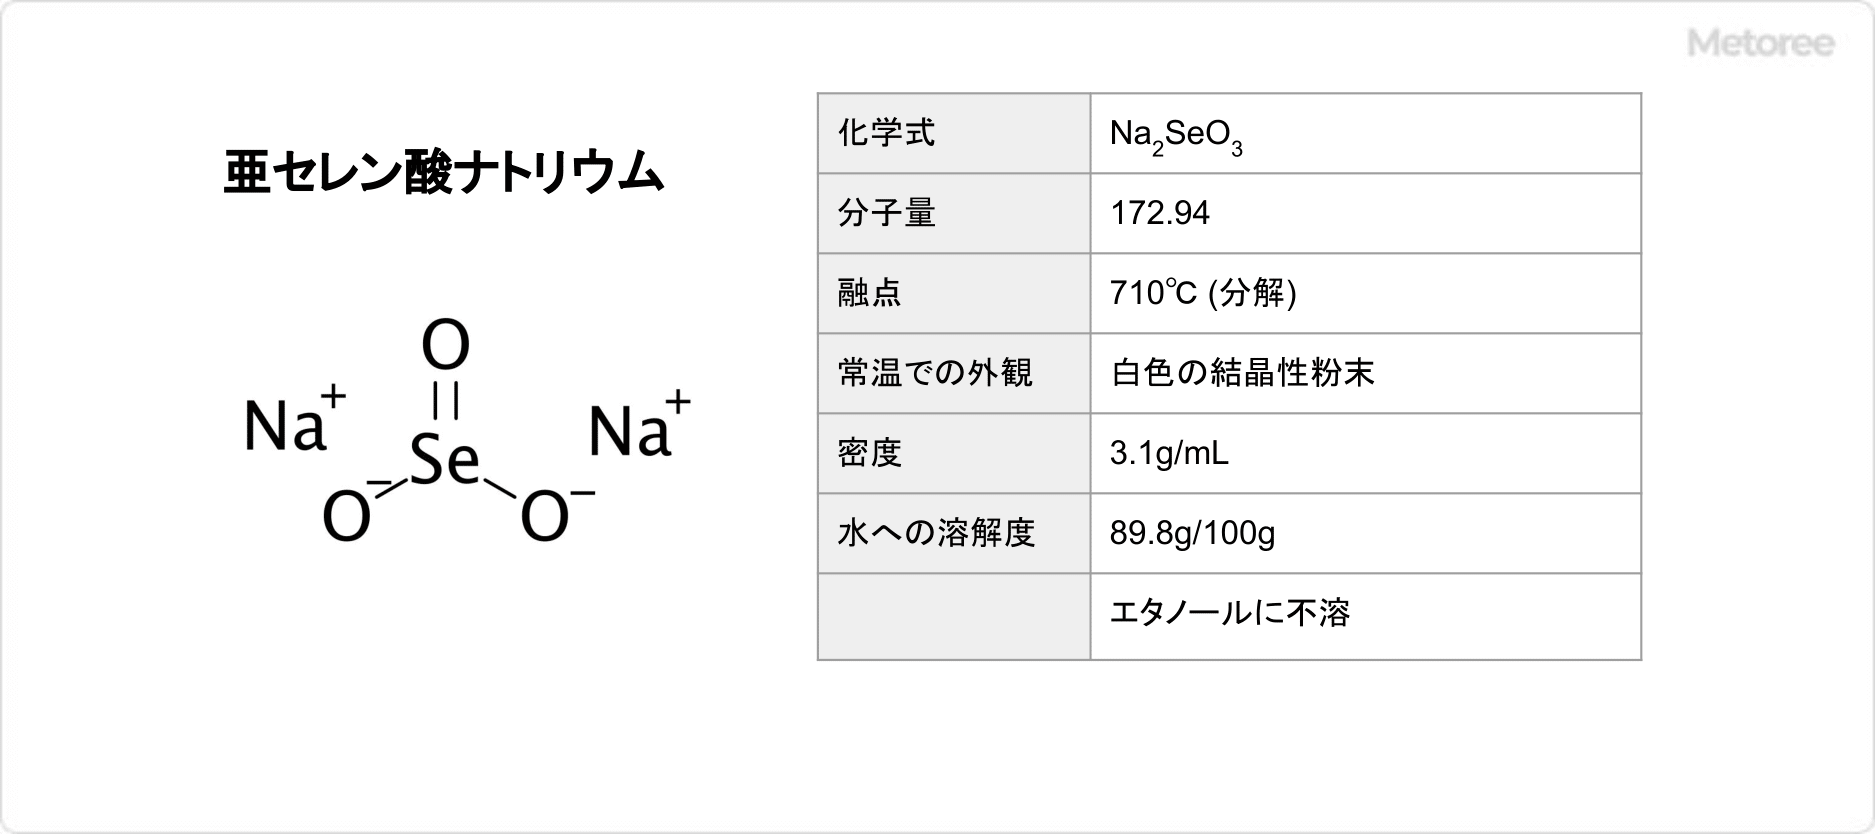 亜セレン酸ナトリウムの基本情報